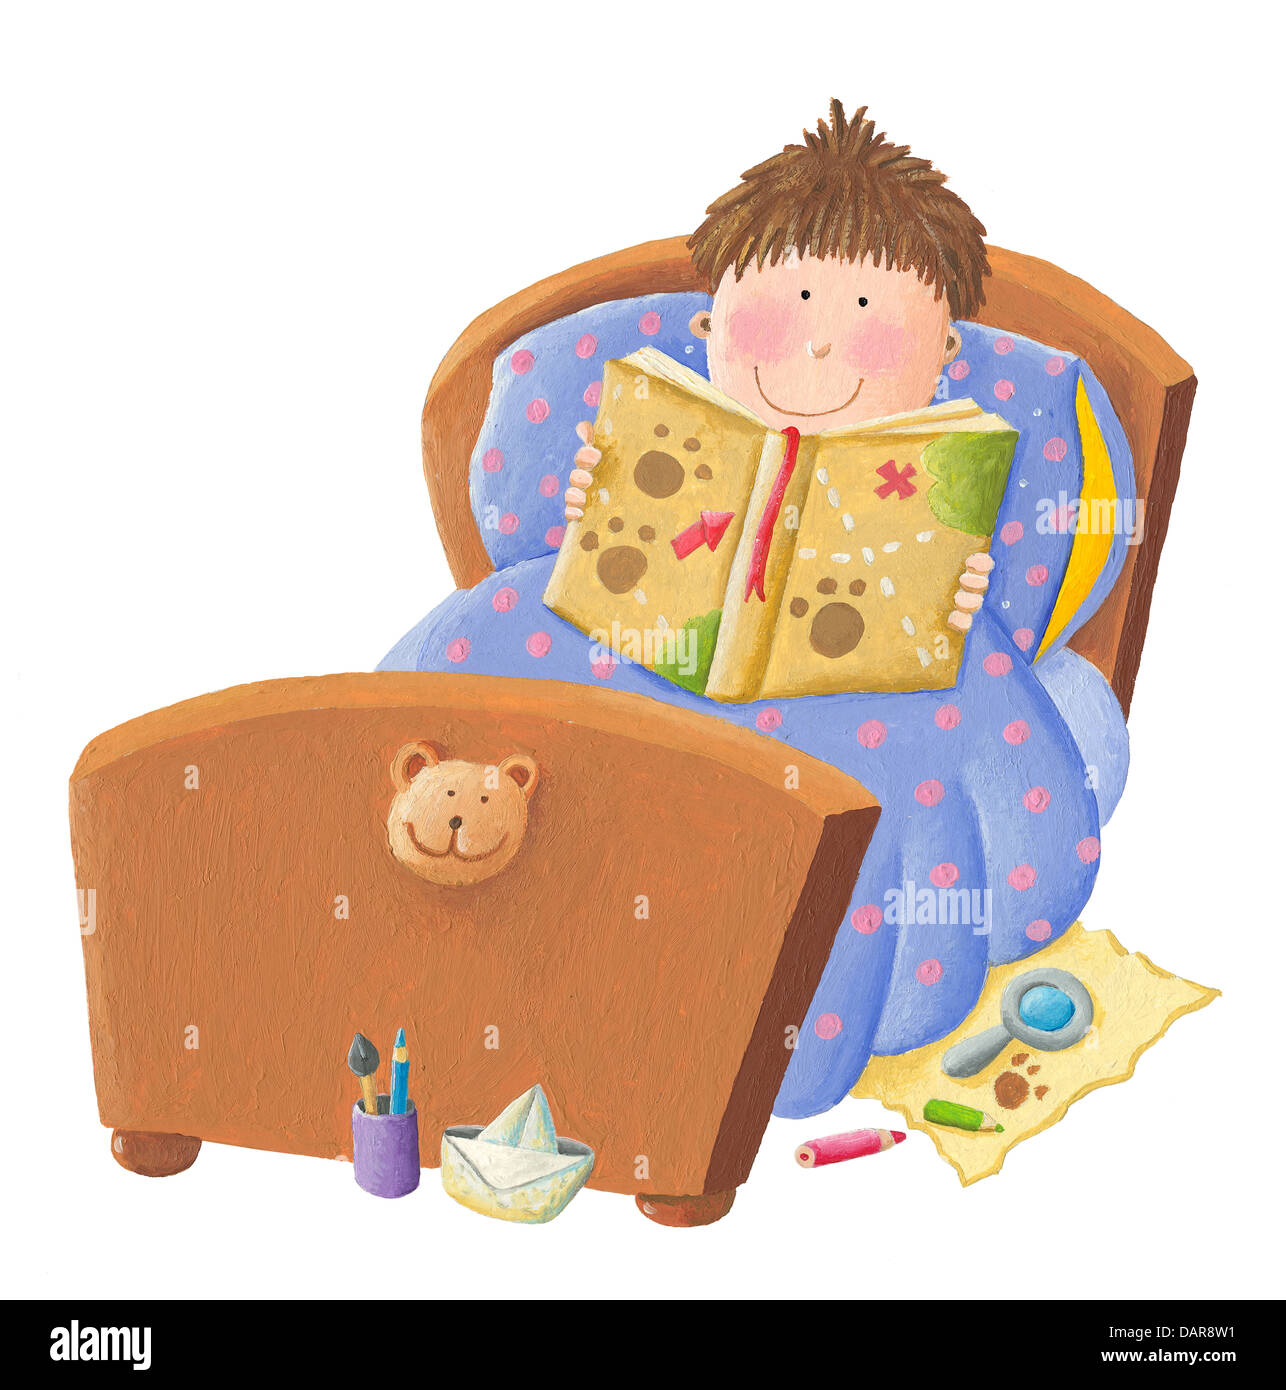 Картинки читаем перед сном. Мальчик лежит с книжкой. Чтение перед сном. Чтение лежа. Чтение книги перед сном картинка.